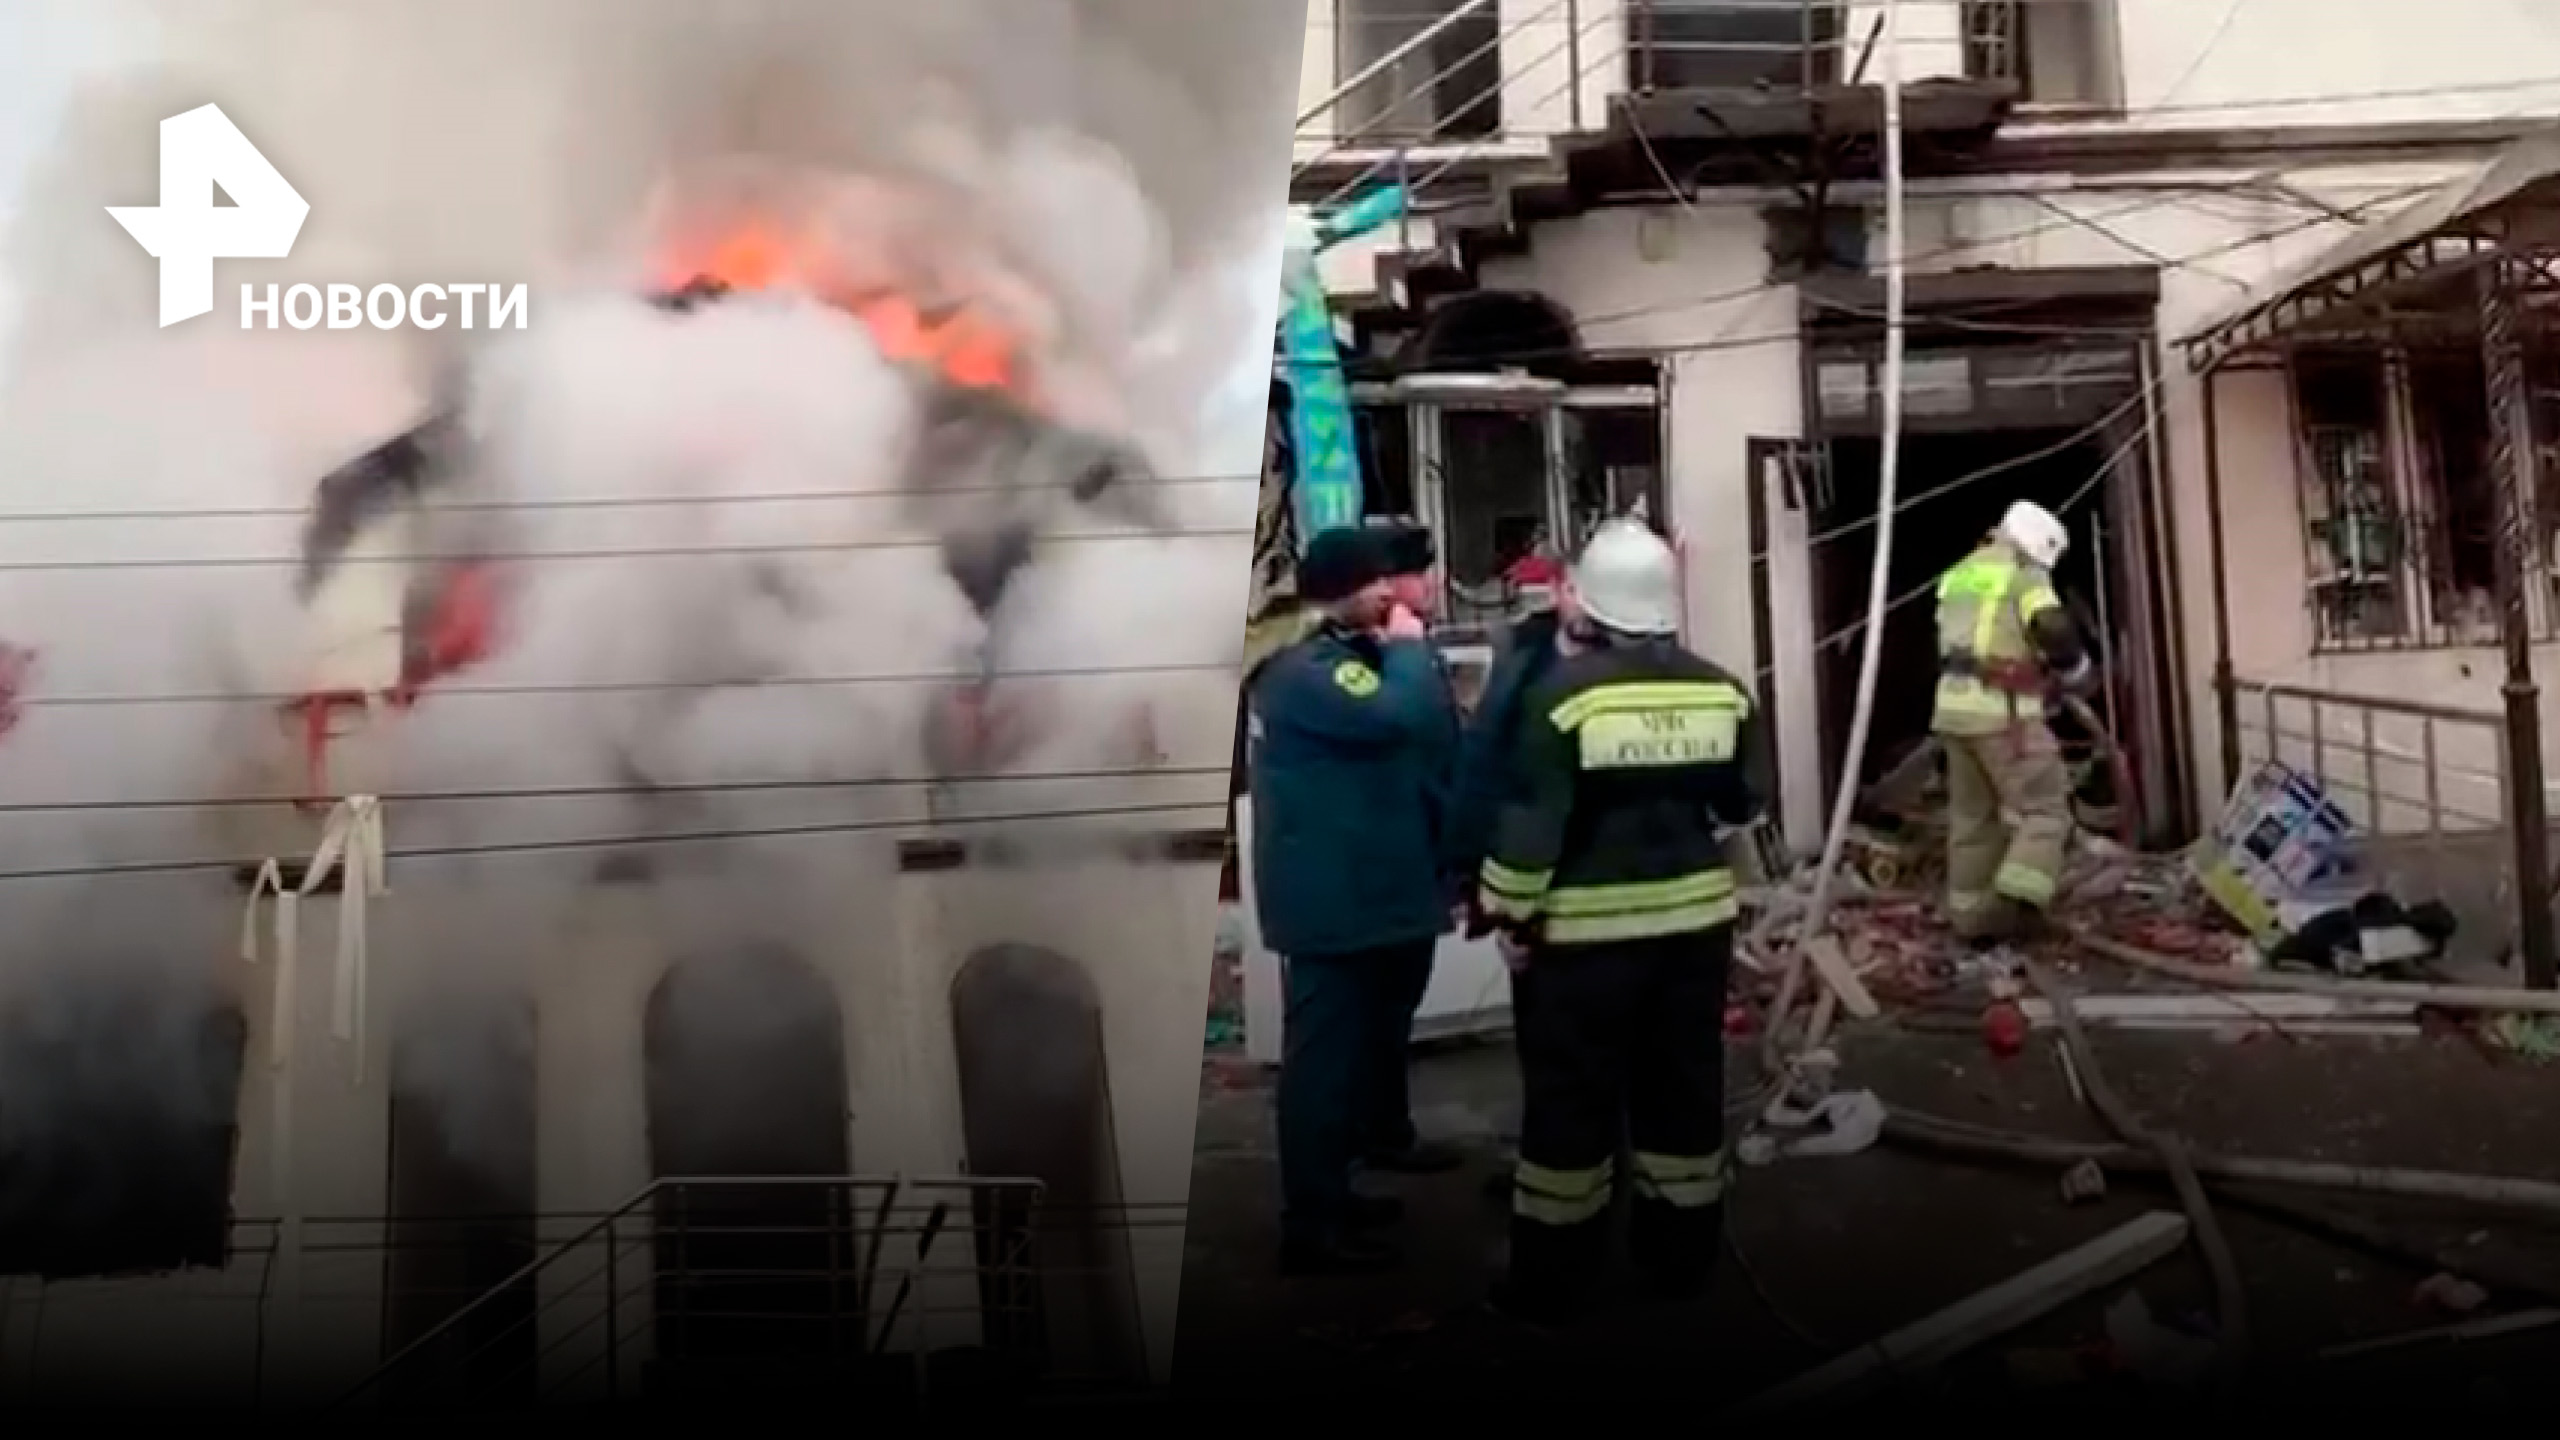 Четыре человека пострадали при взрыве газа в торговом центре "Таргим" в Назрани / РЕН Новости